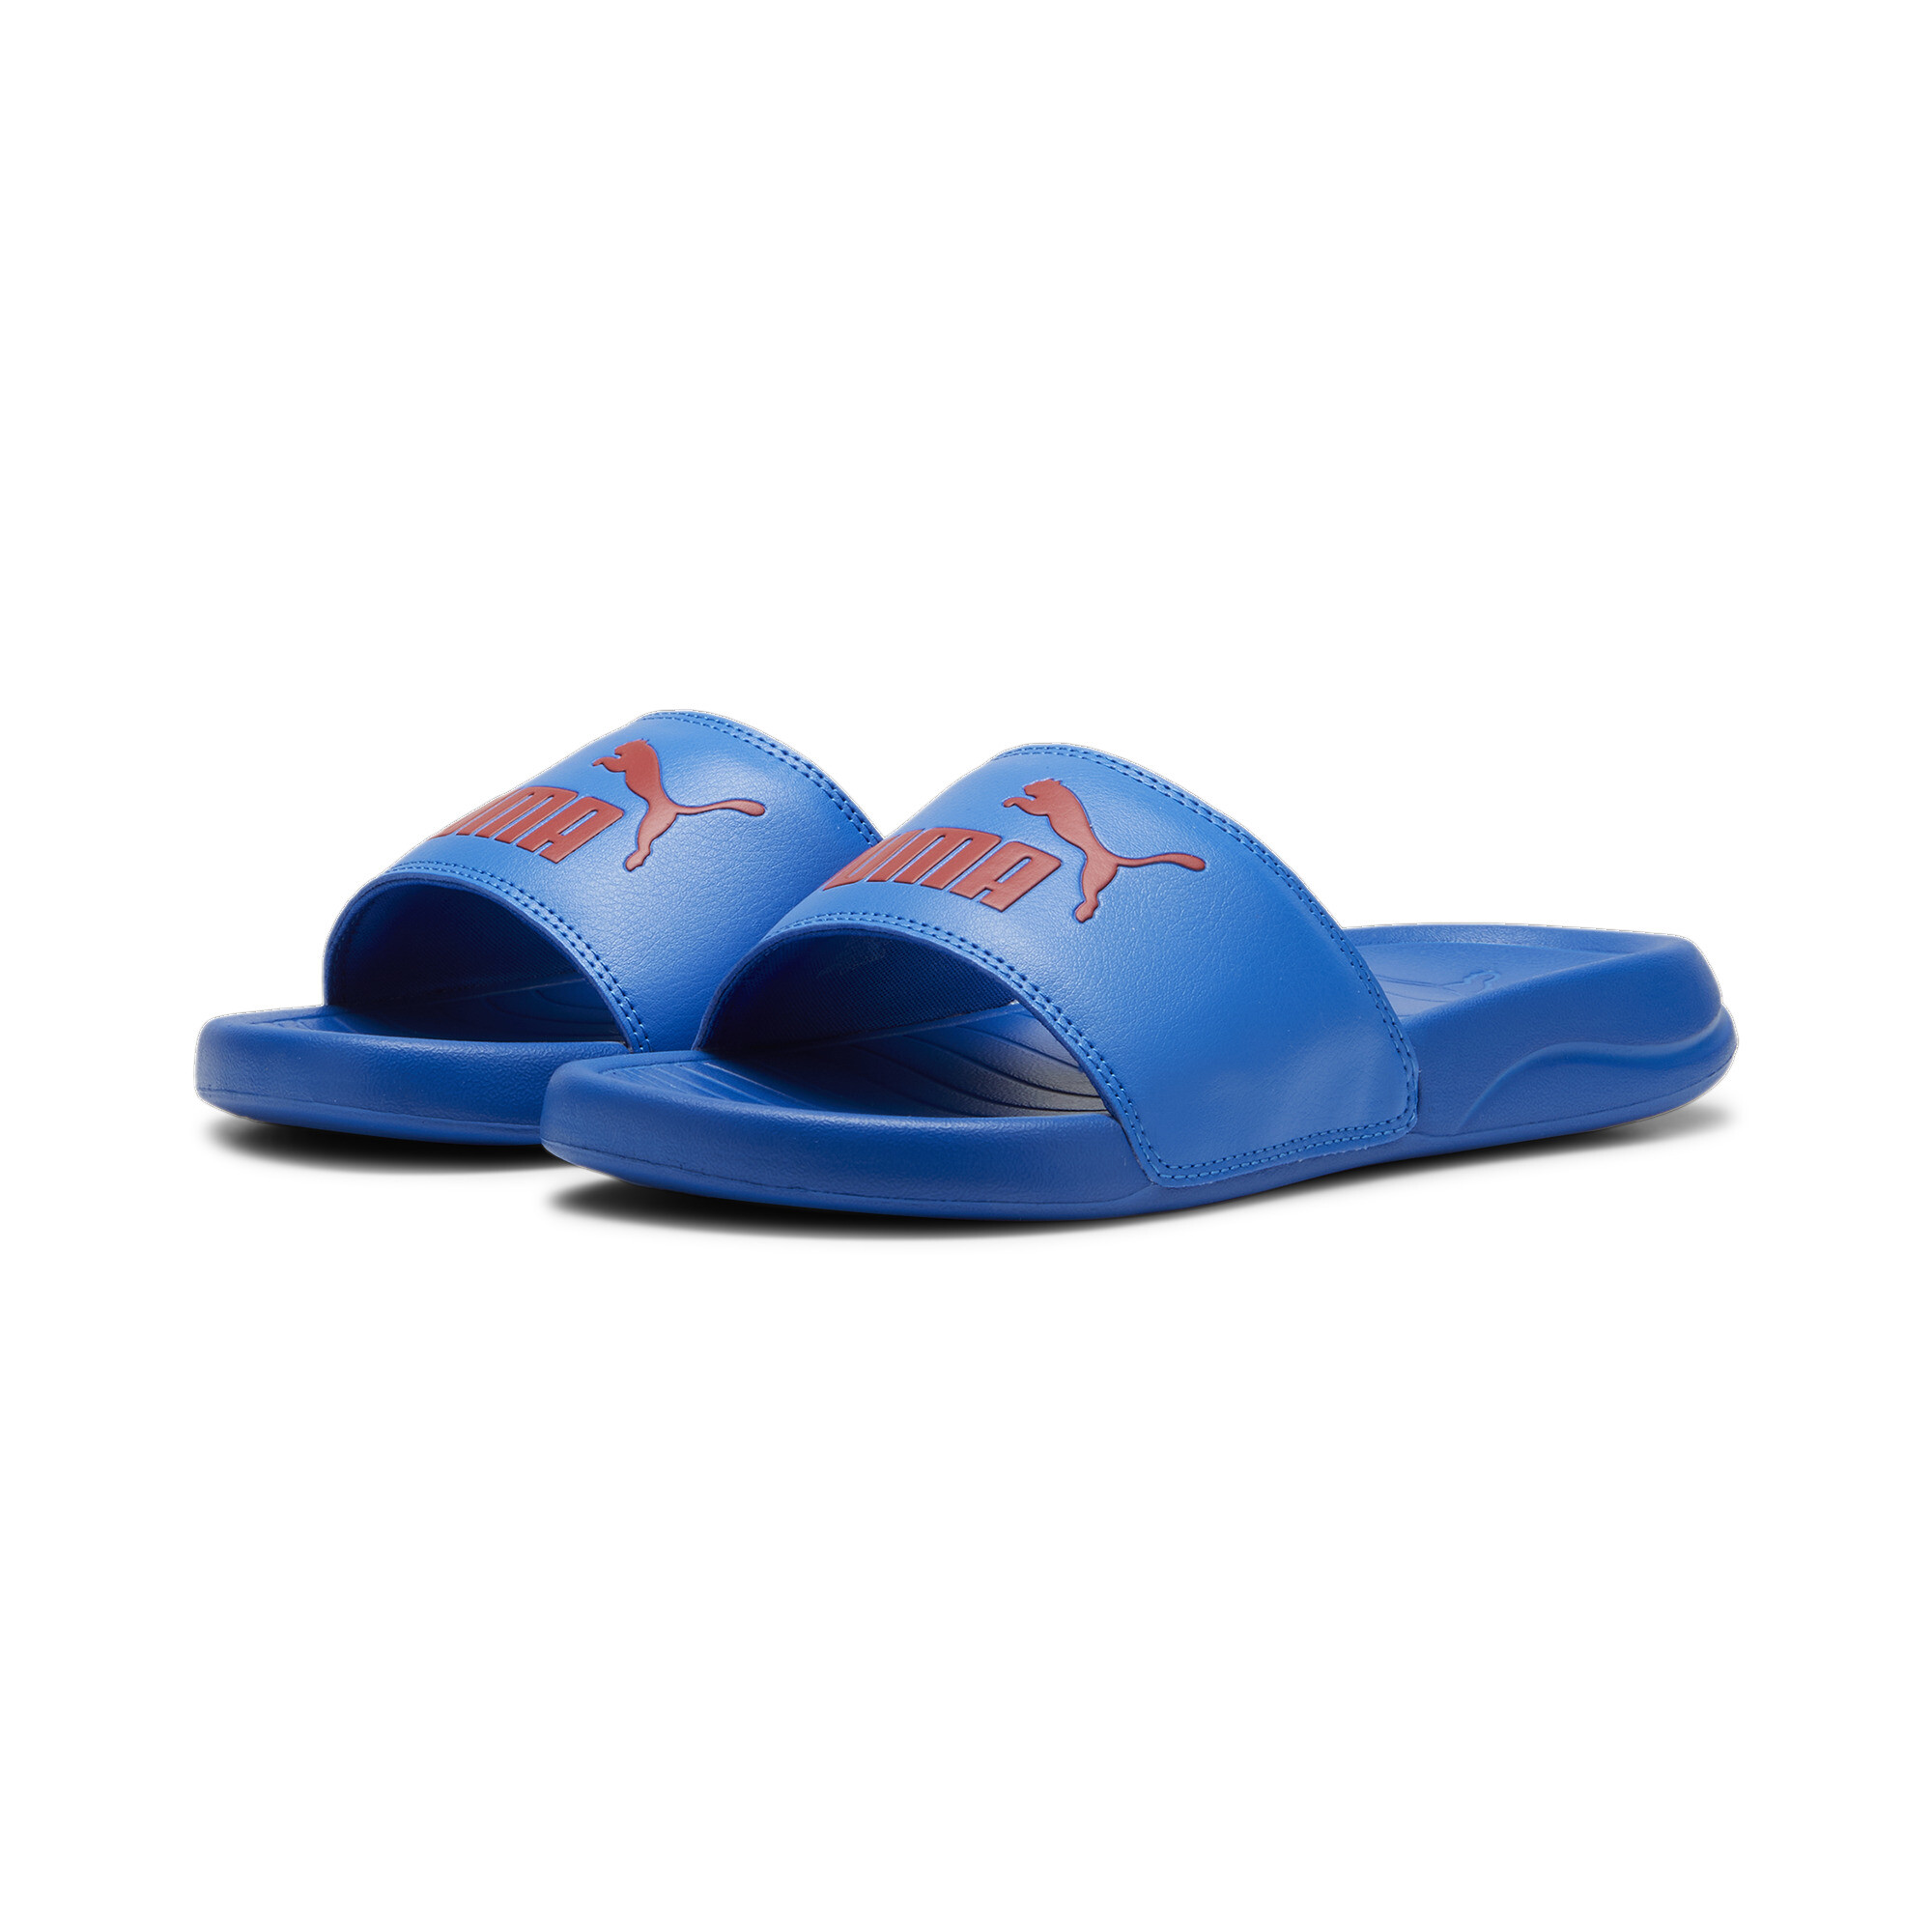 PUMA Popcat 20 Youth Sandals In 80 - Blue, Size EU 35.5